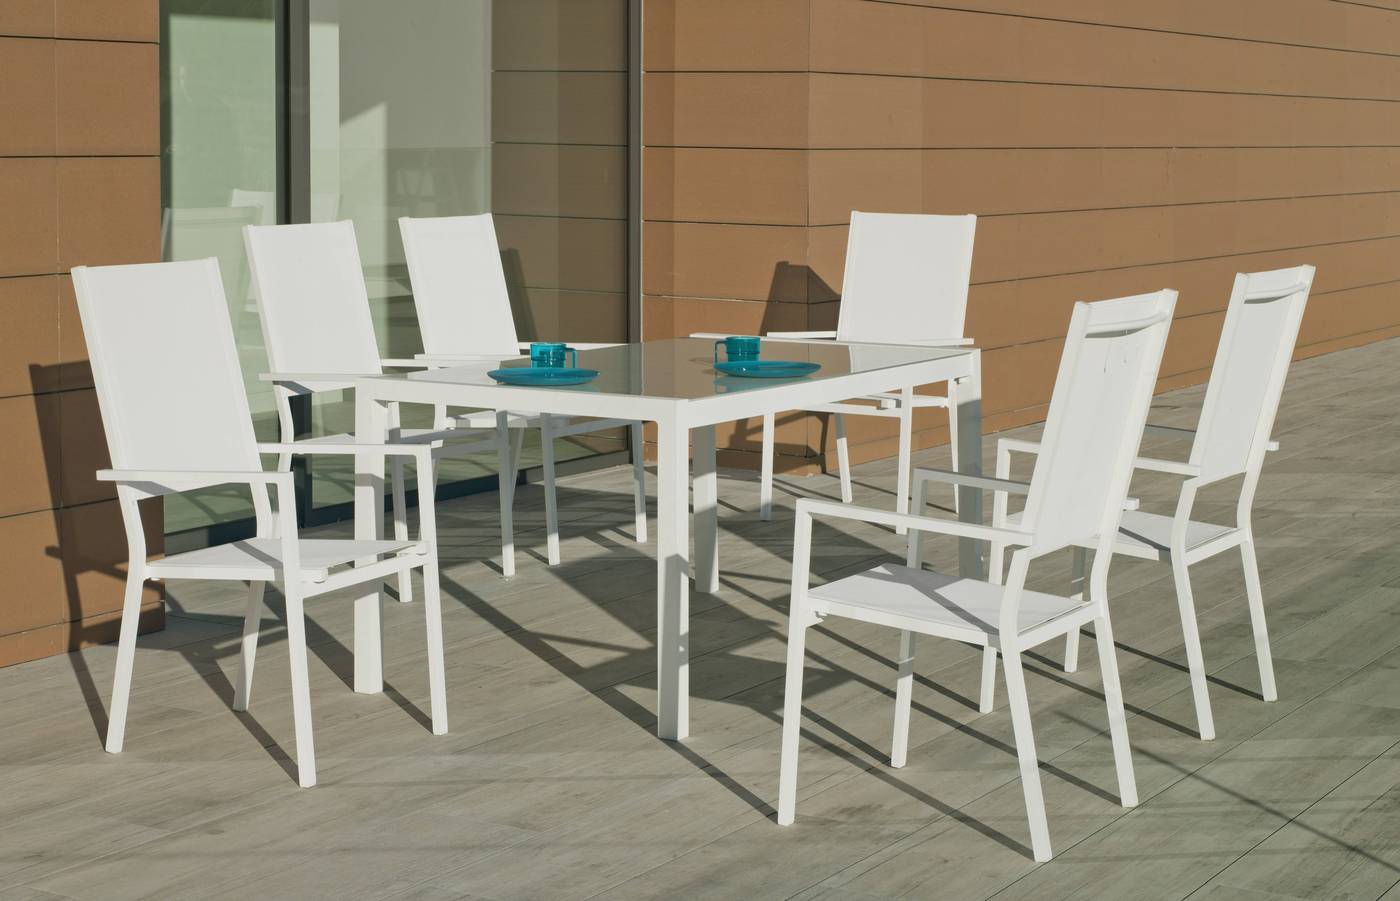 Conjunto aluminio para jardín: Mesa rectangular 160 cm + 6 sillones altos de textilen. Disponible en color blanco, plata y antracita.